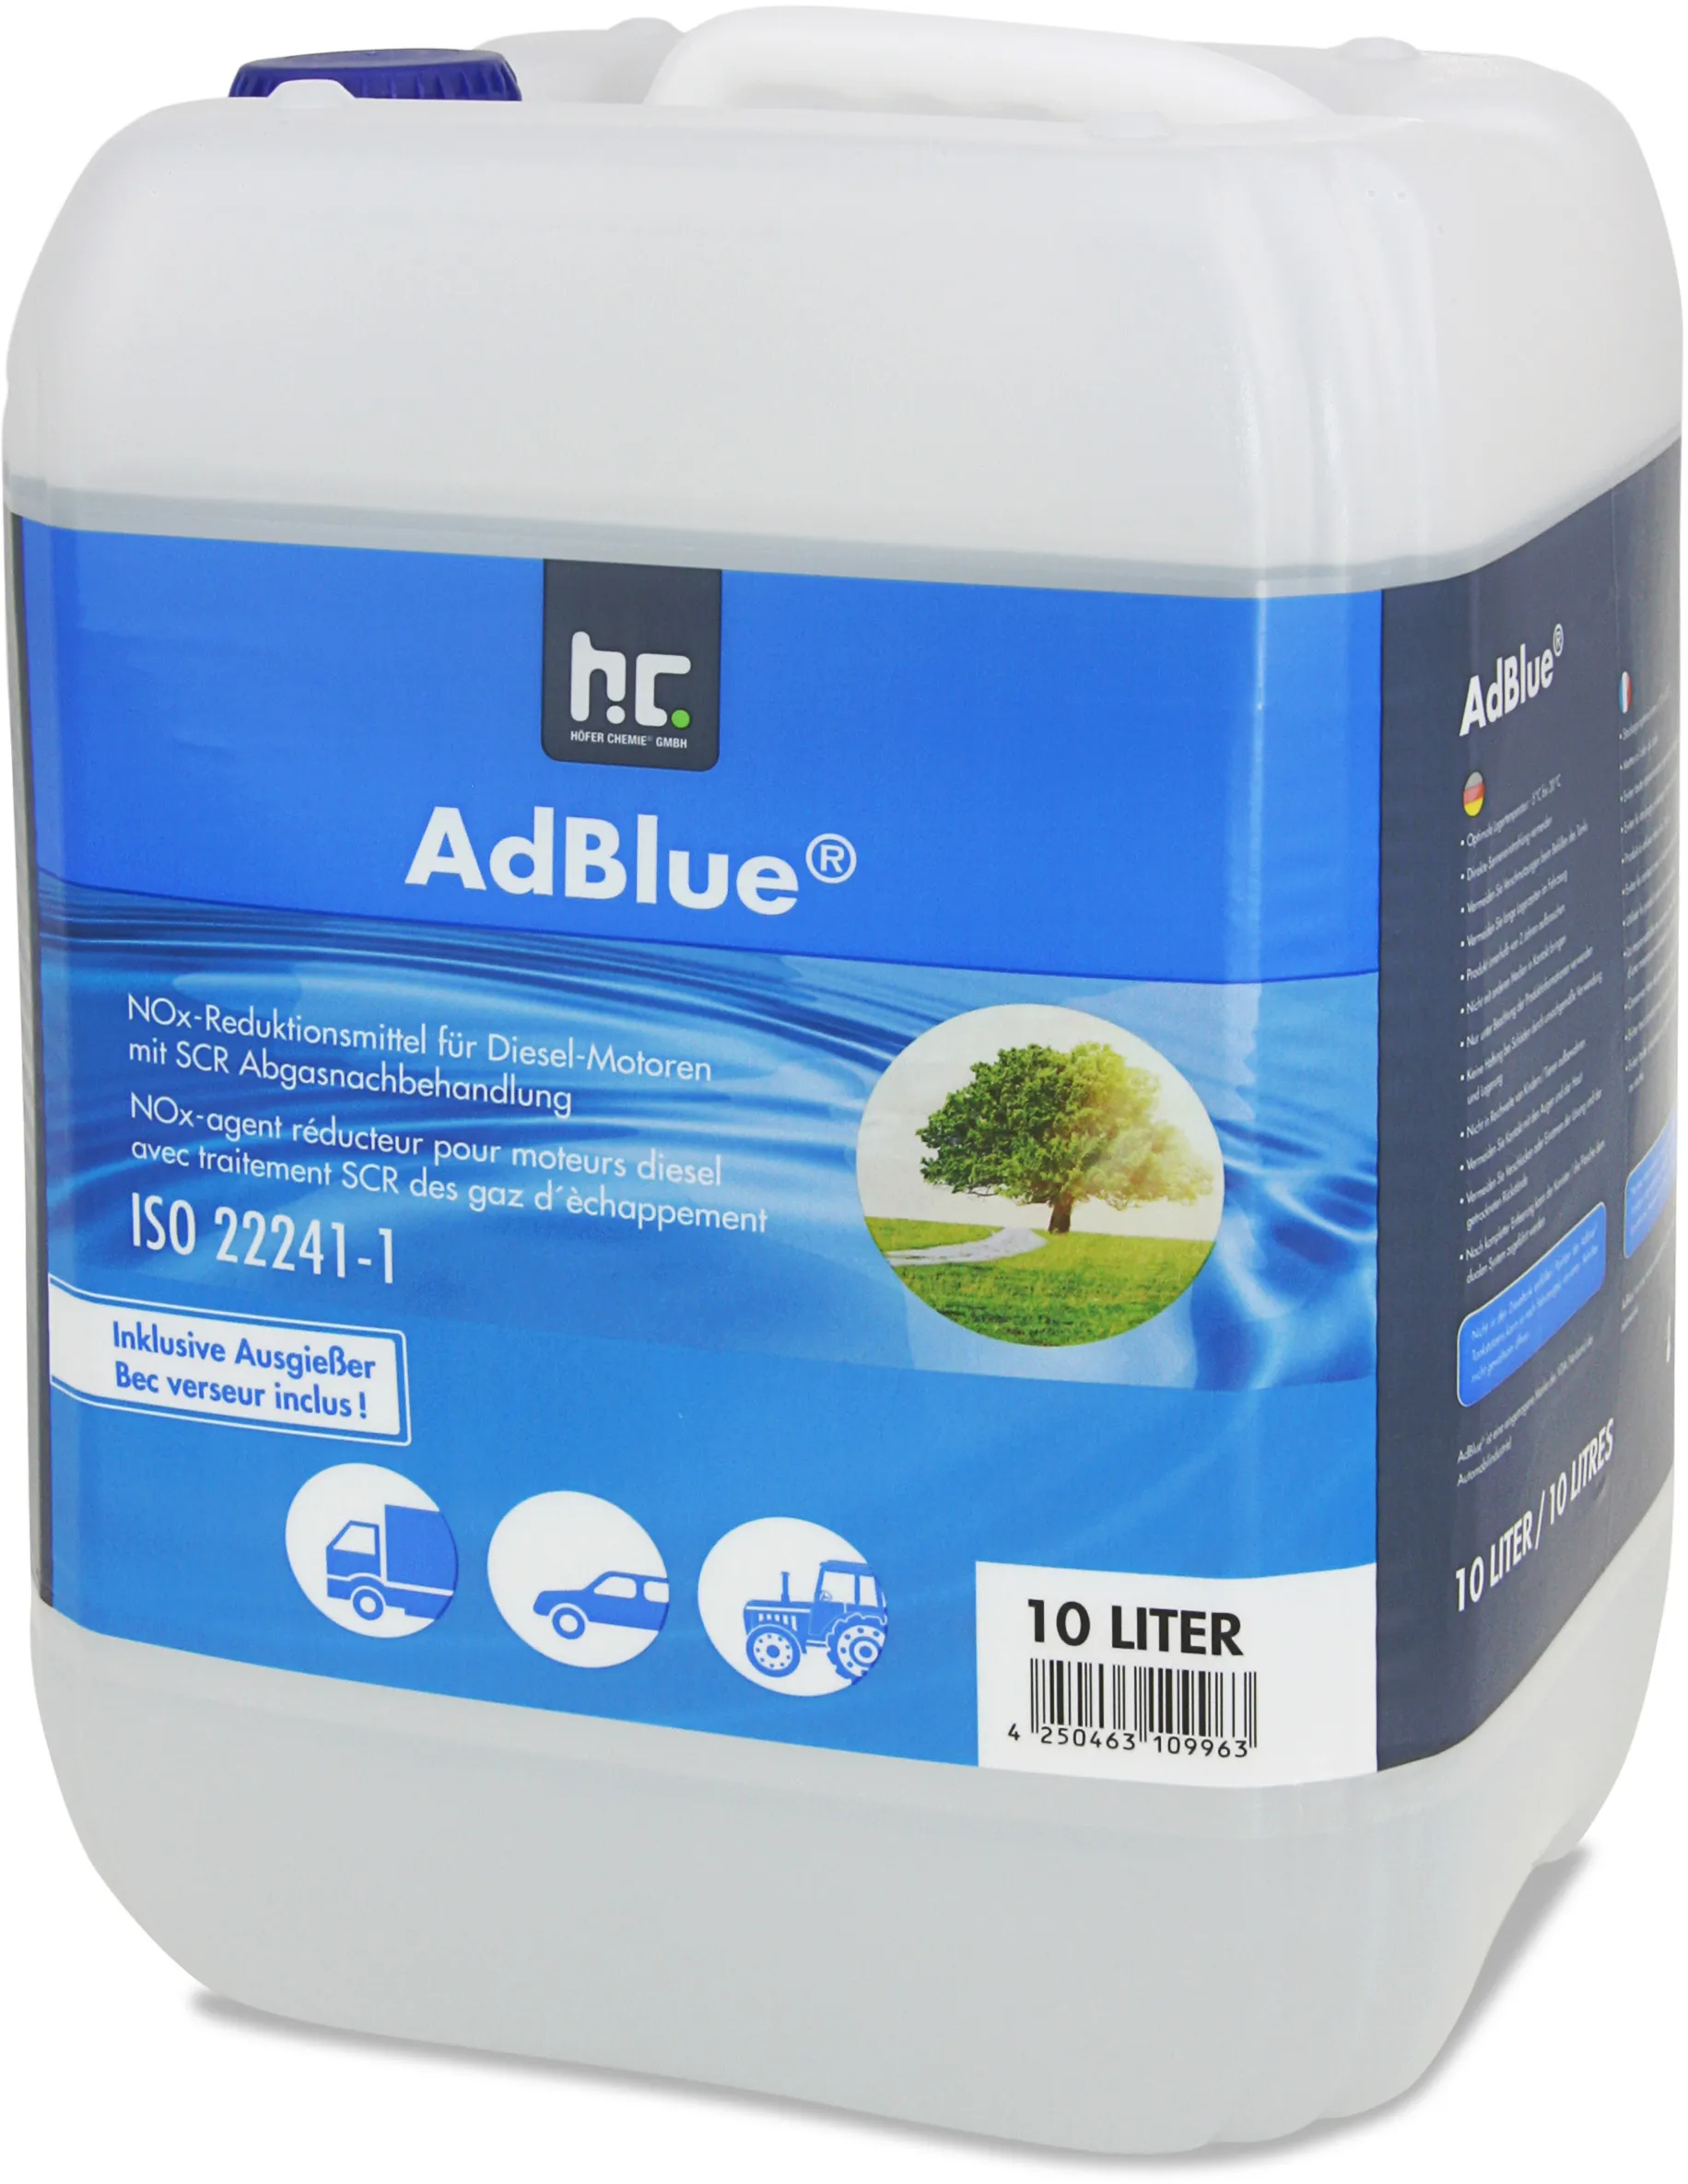 1 x 10L AdBlue - l'écologie par Höfer Chemie